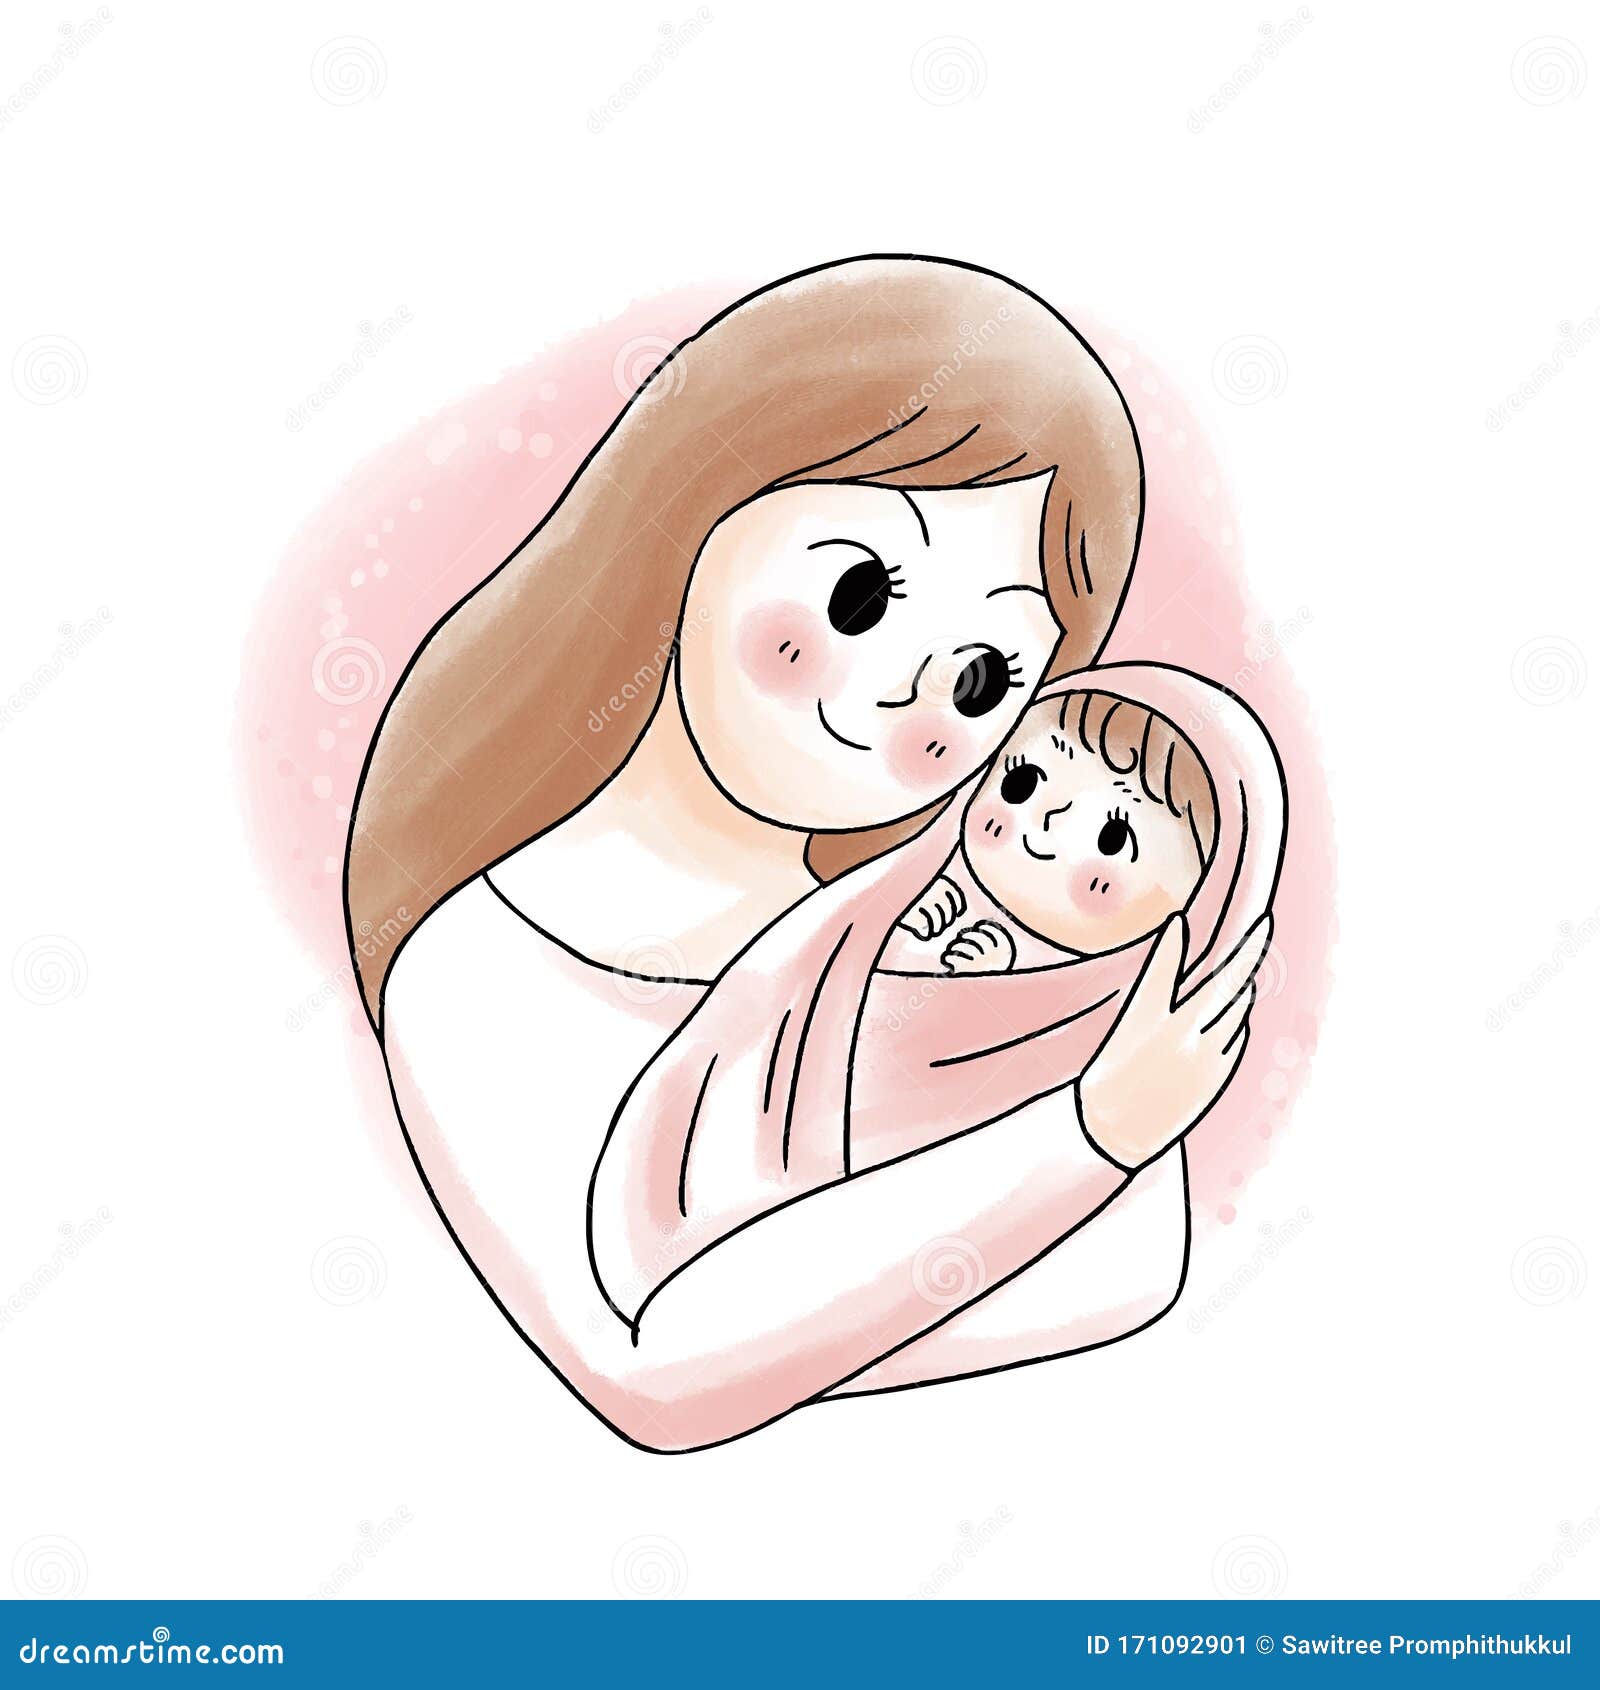 Free Free Little Mother Hugger Svg 177 SVG PNG EPS DXF File